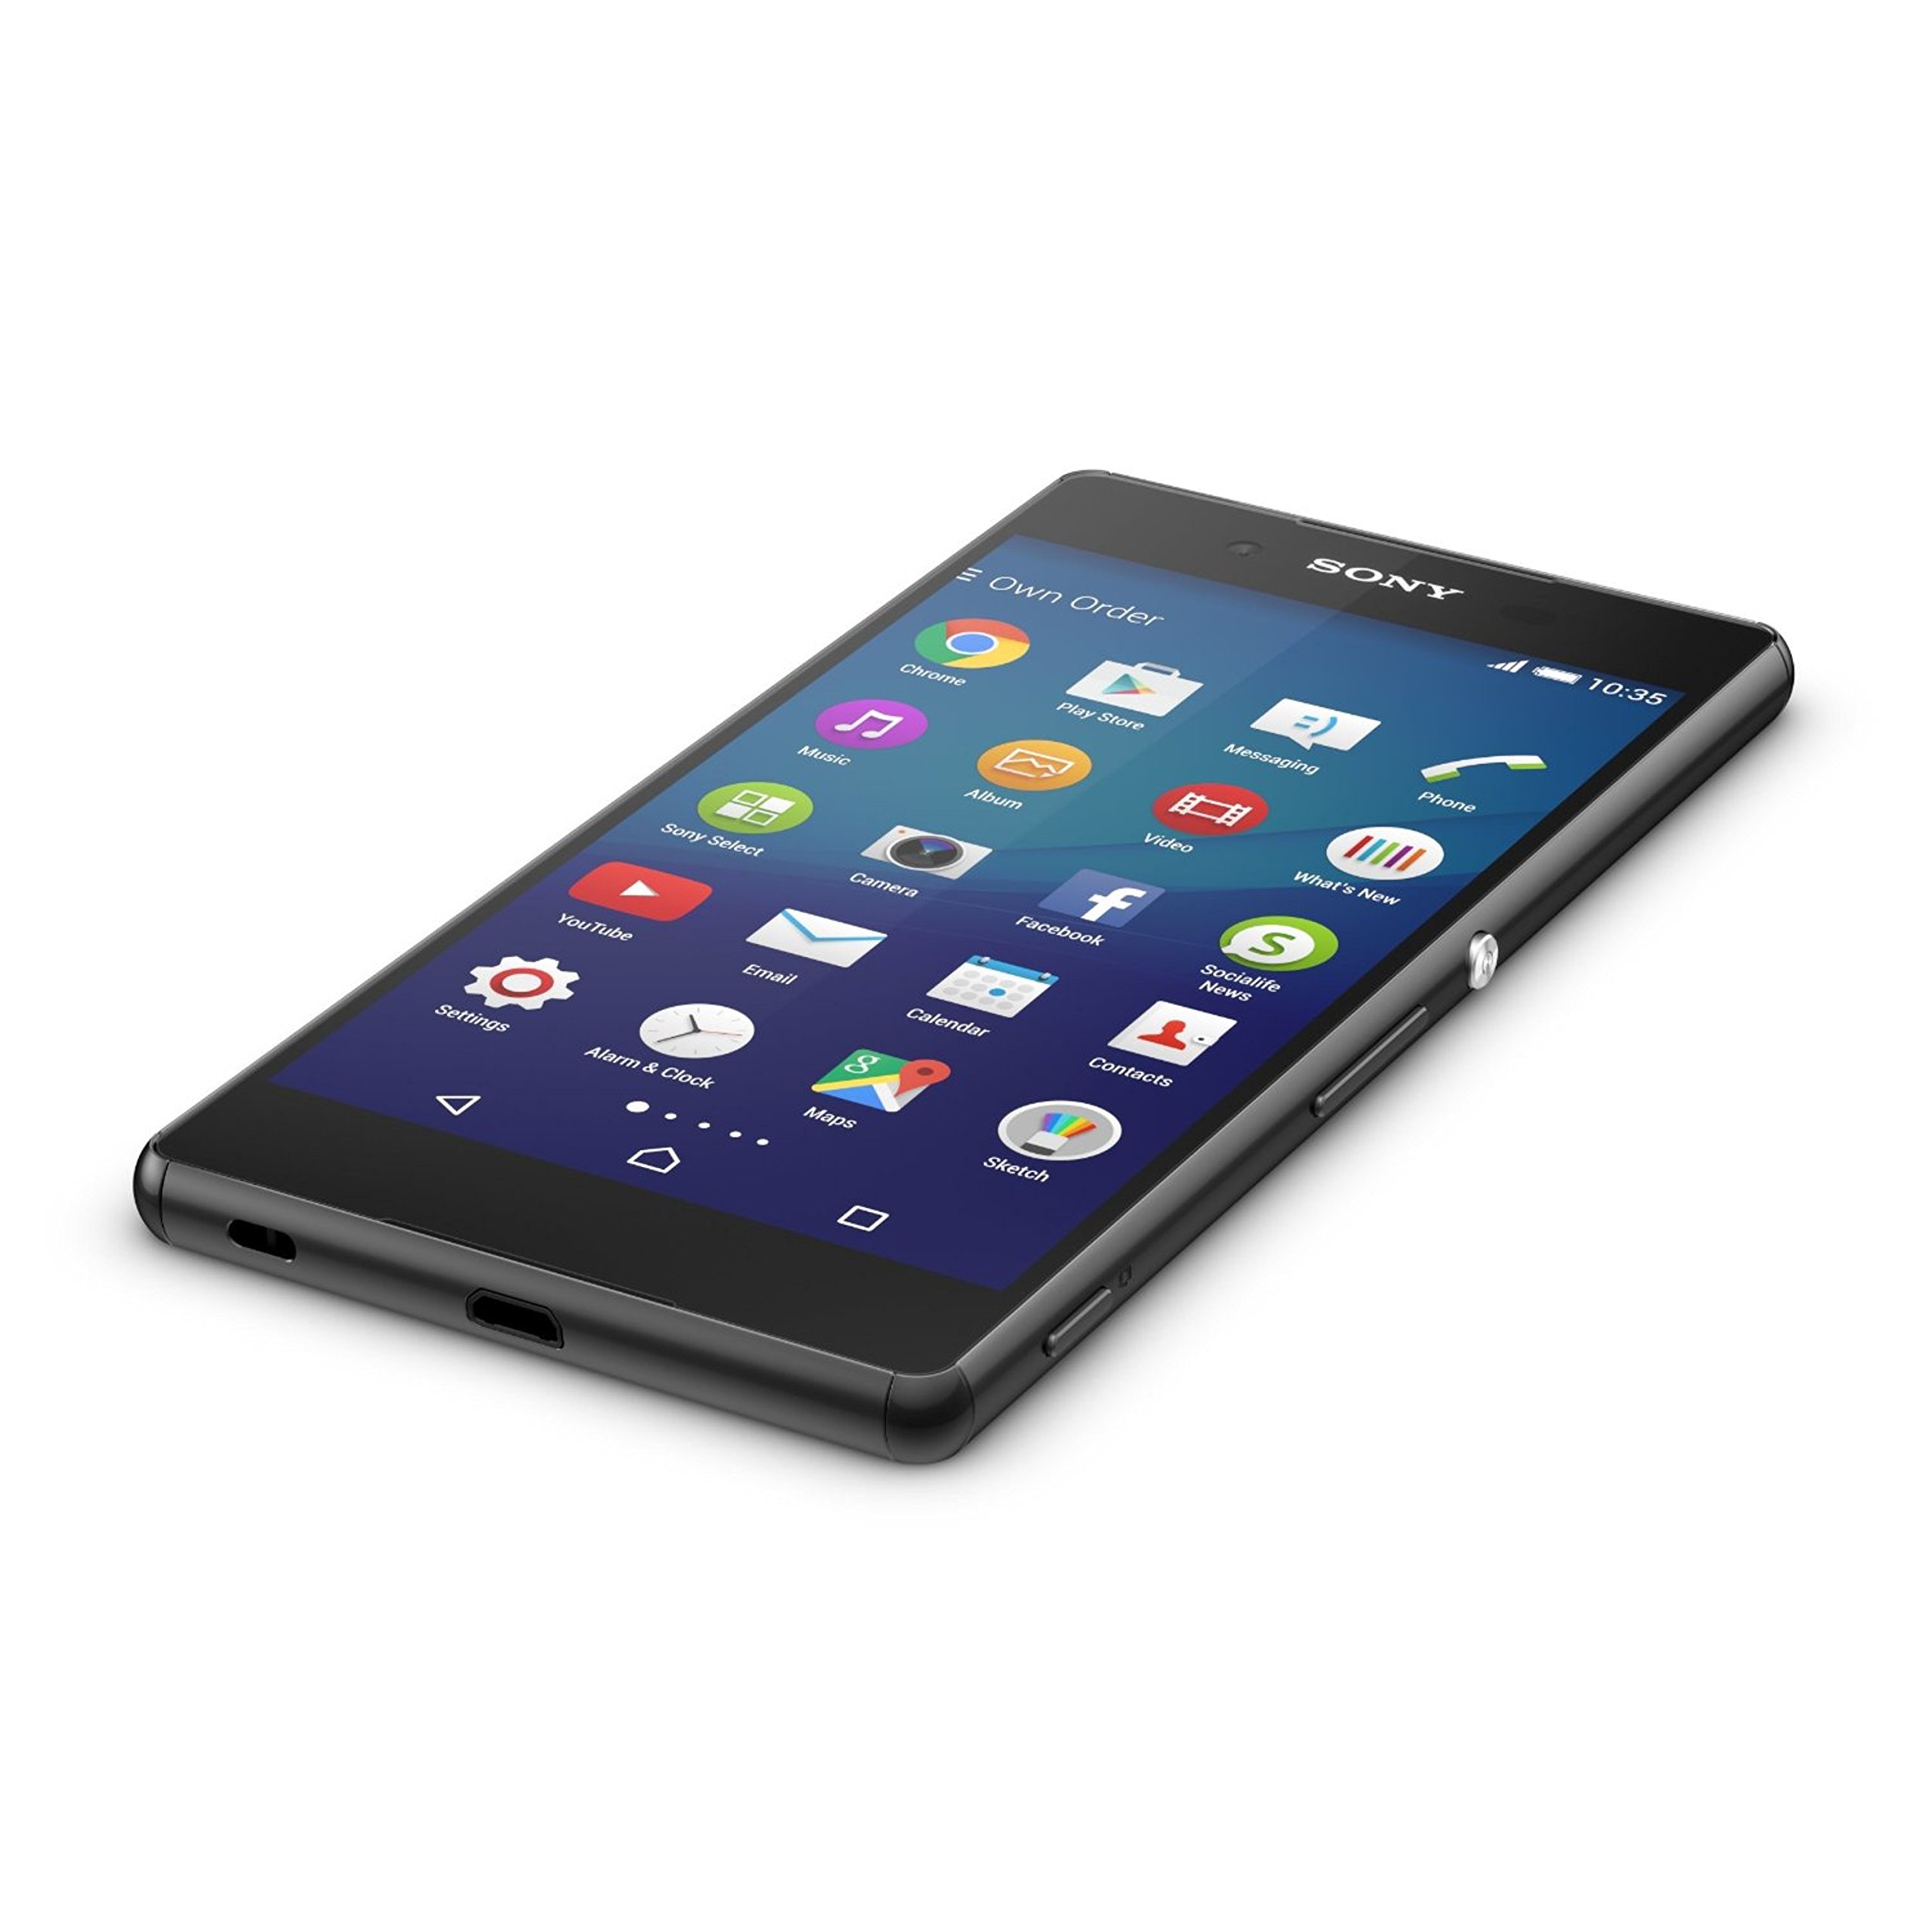 Sony Xperia Z3+ (Z3 Plus) E6553 5.2-Inch 32GB Factory Unlocked Smartphone (Black) - International Stock no warranty